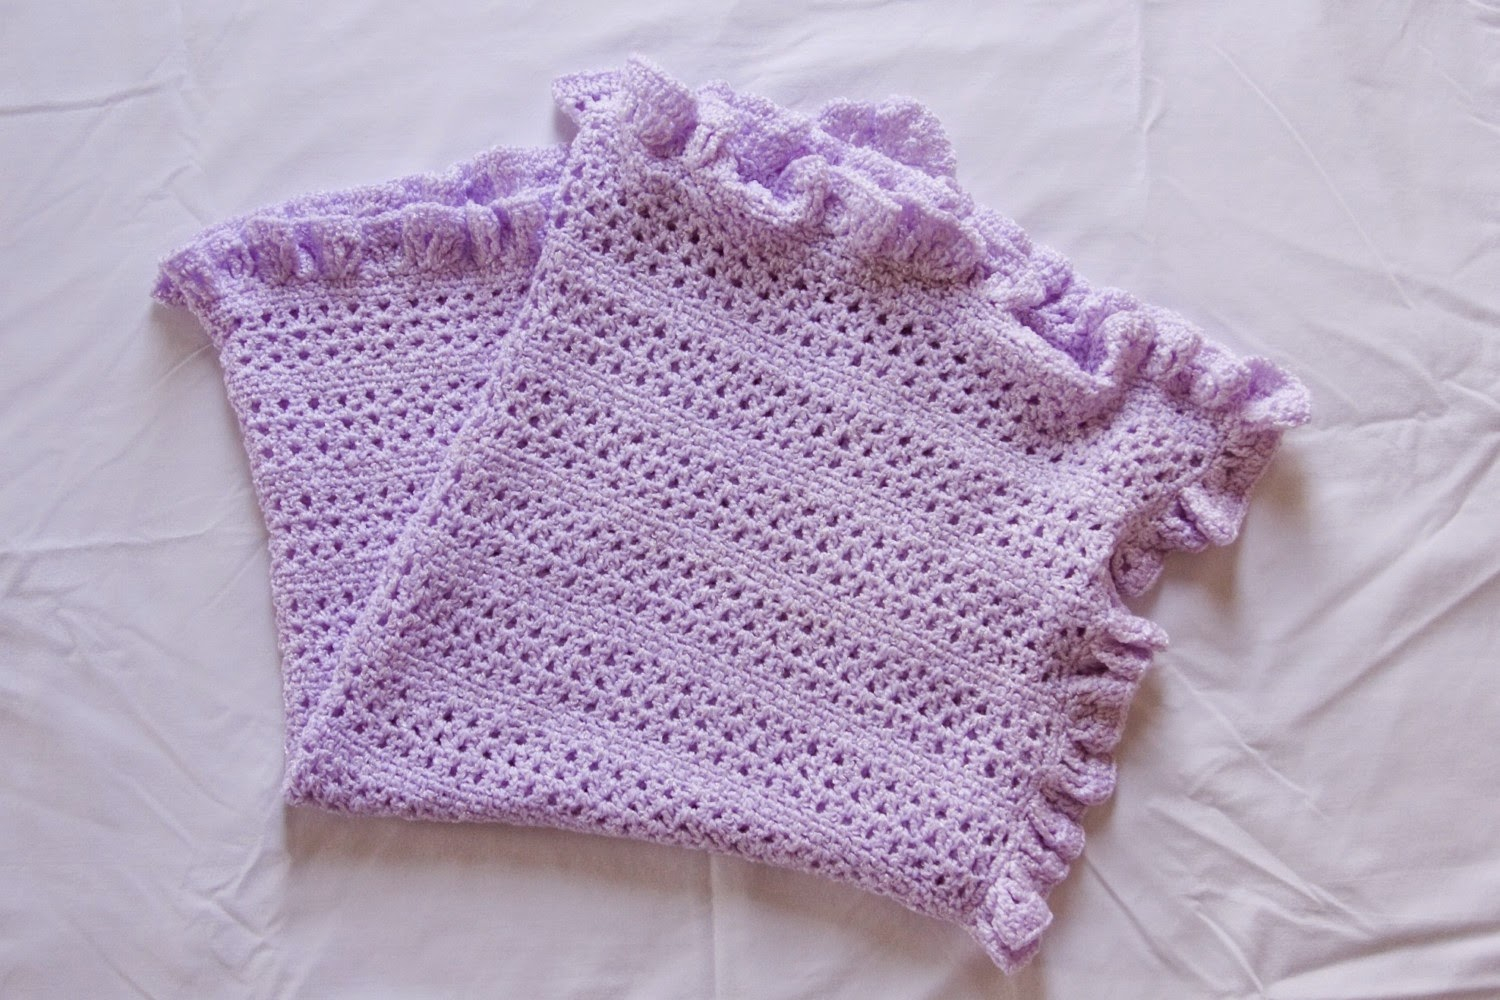 Easy Baby Blanket Crochet Patterns For Beginners Best Free Crochet Blanket Patterns For Beginners On Pinterest